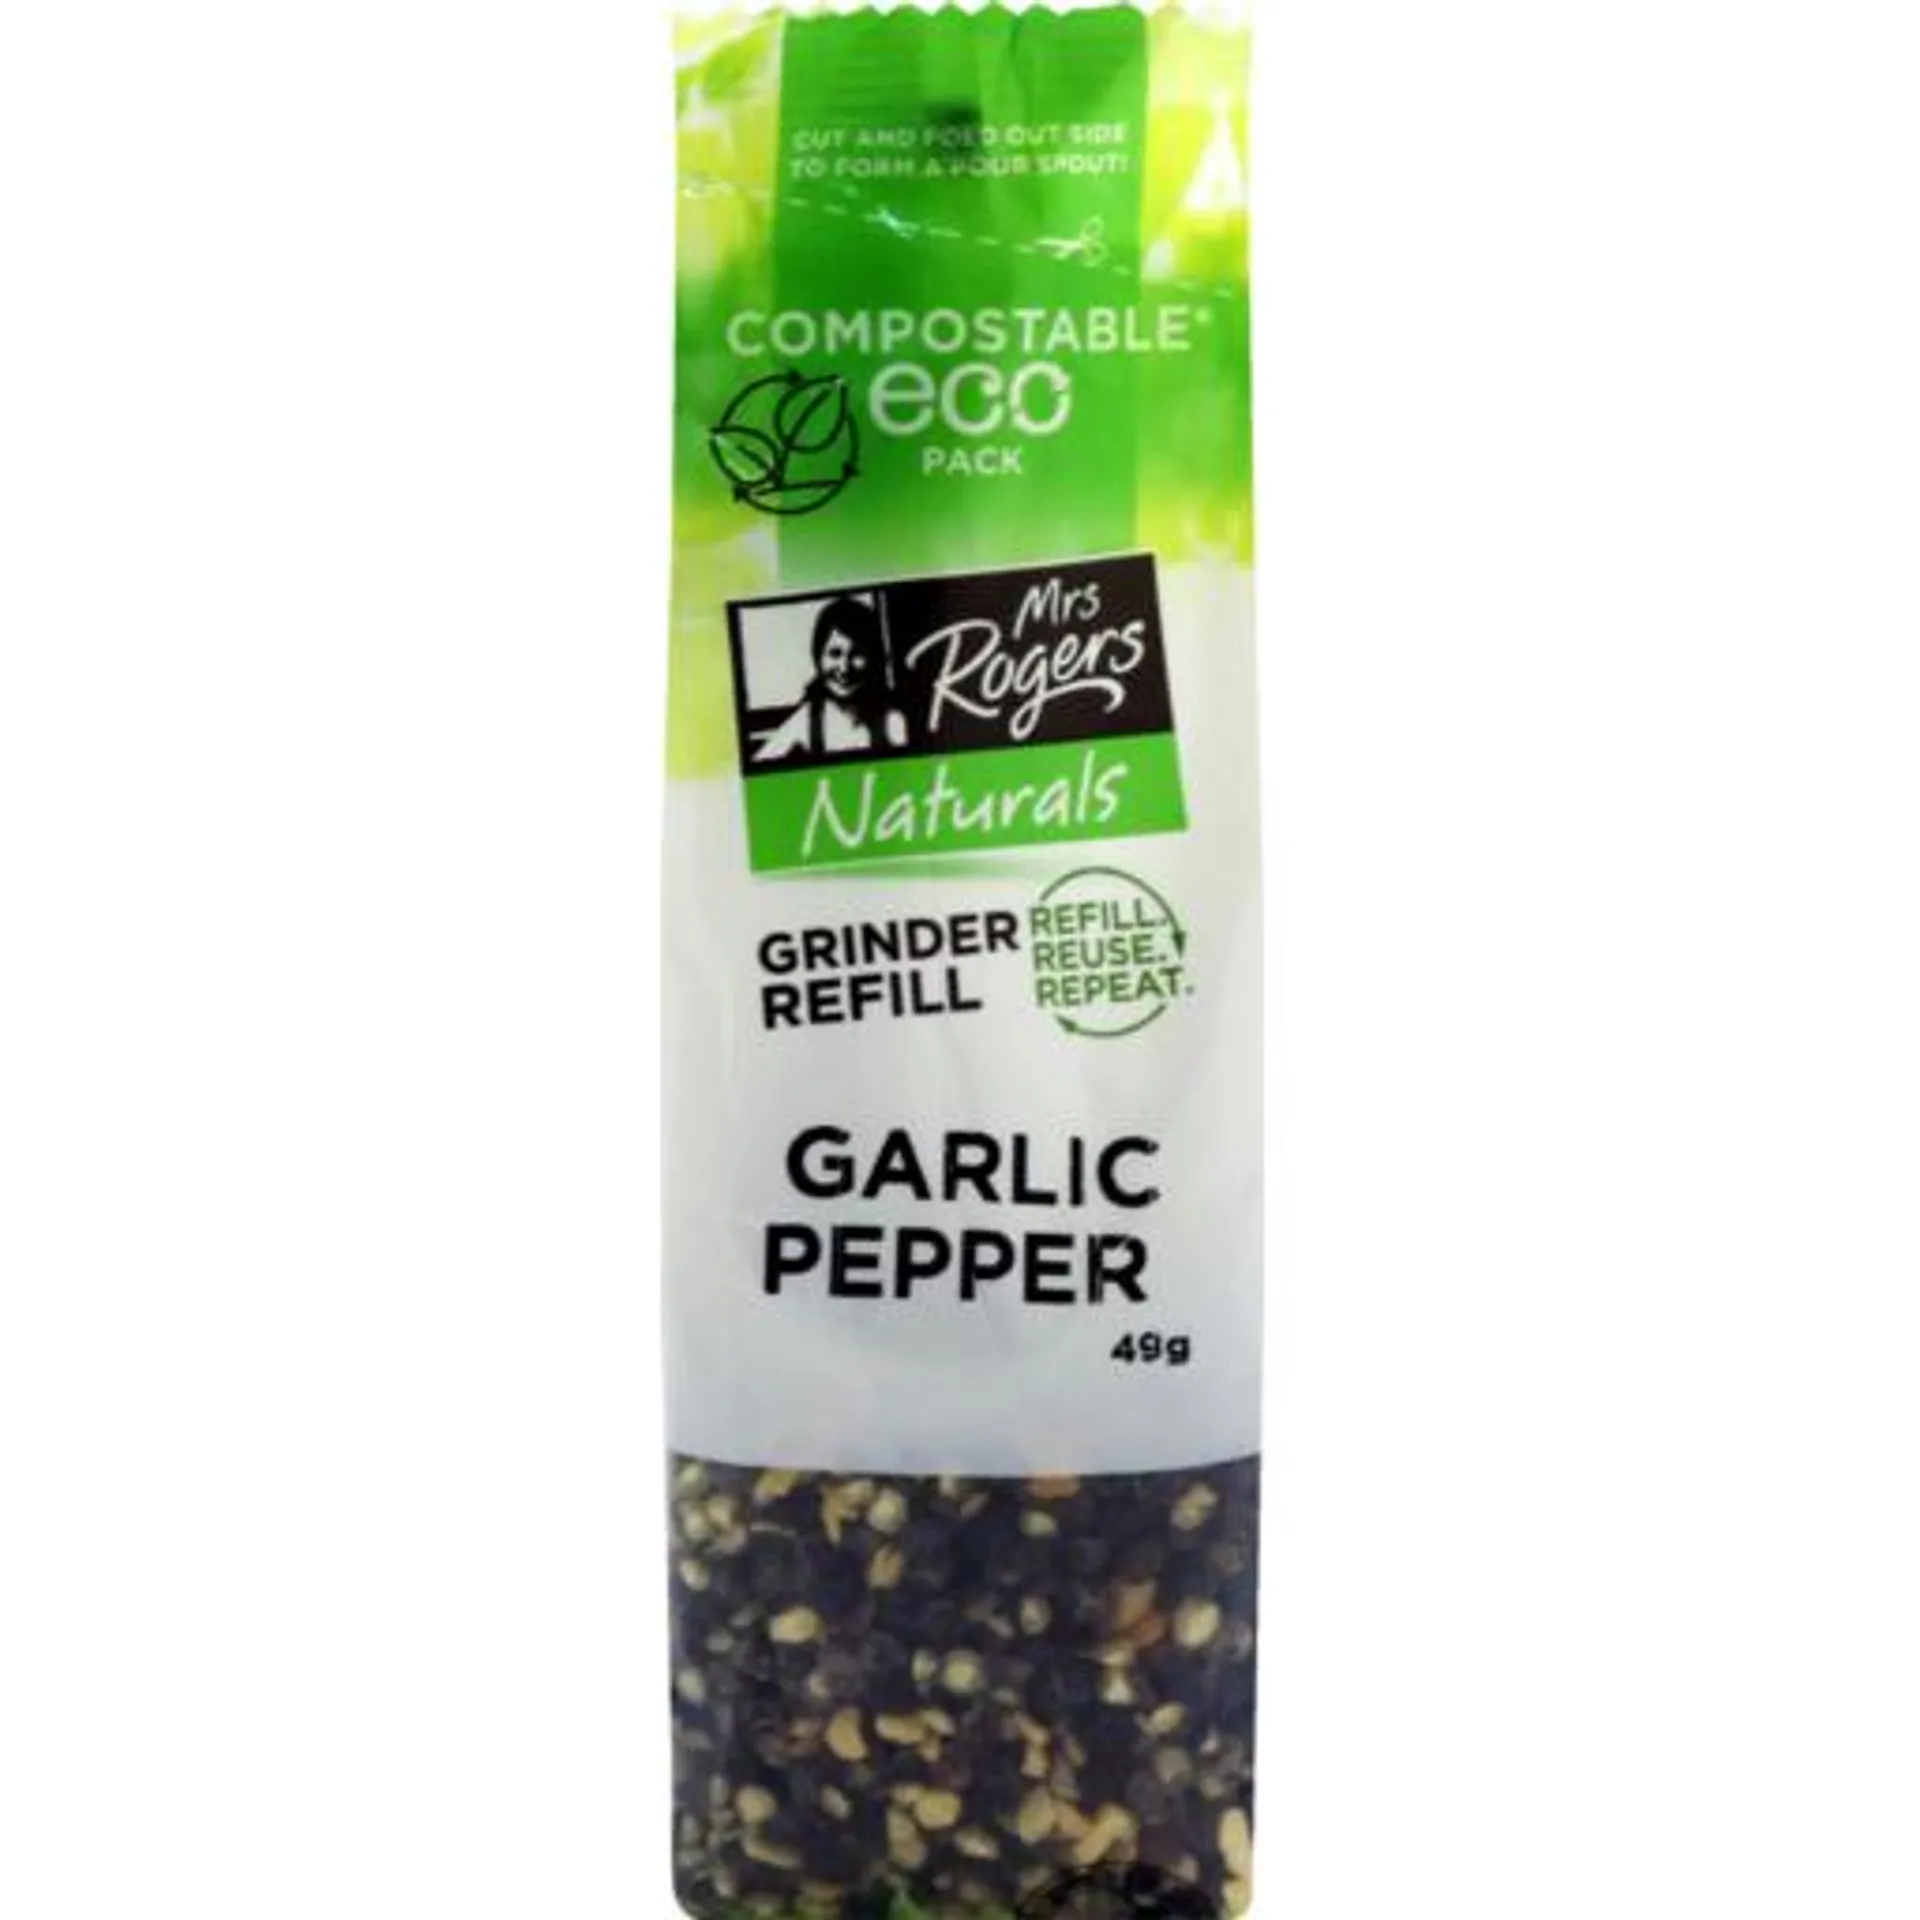 Mrs Rogers Naturals Grinder Refill Garlic Pepper 49g